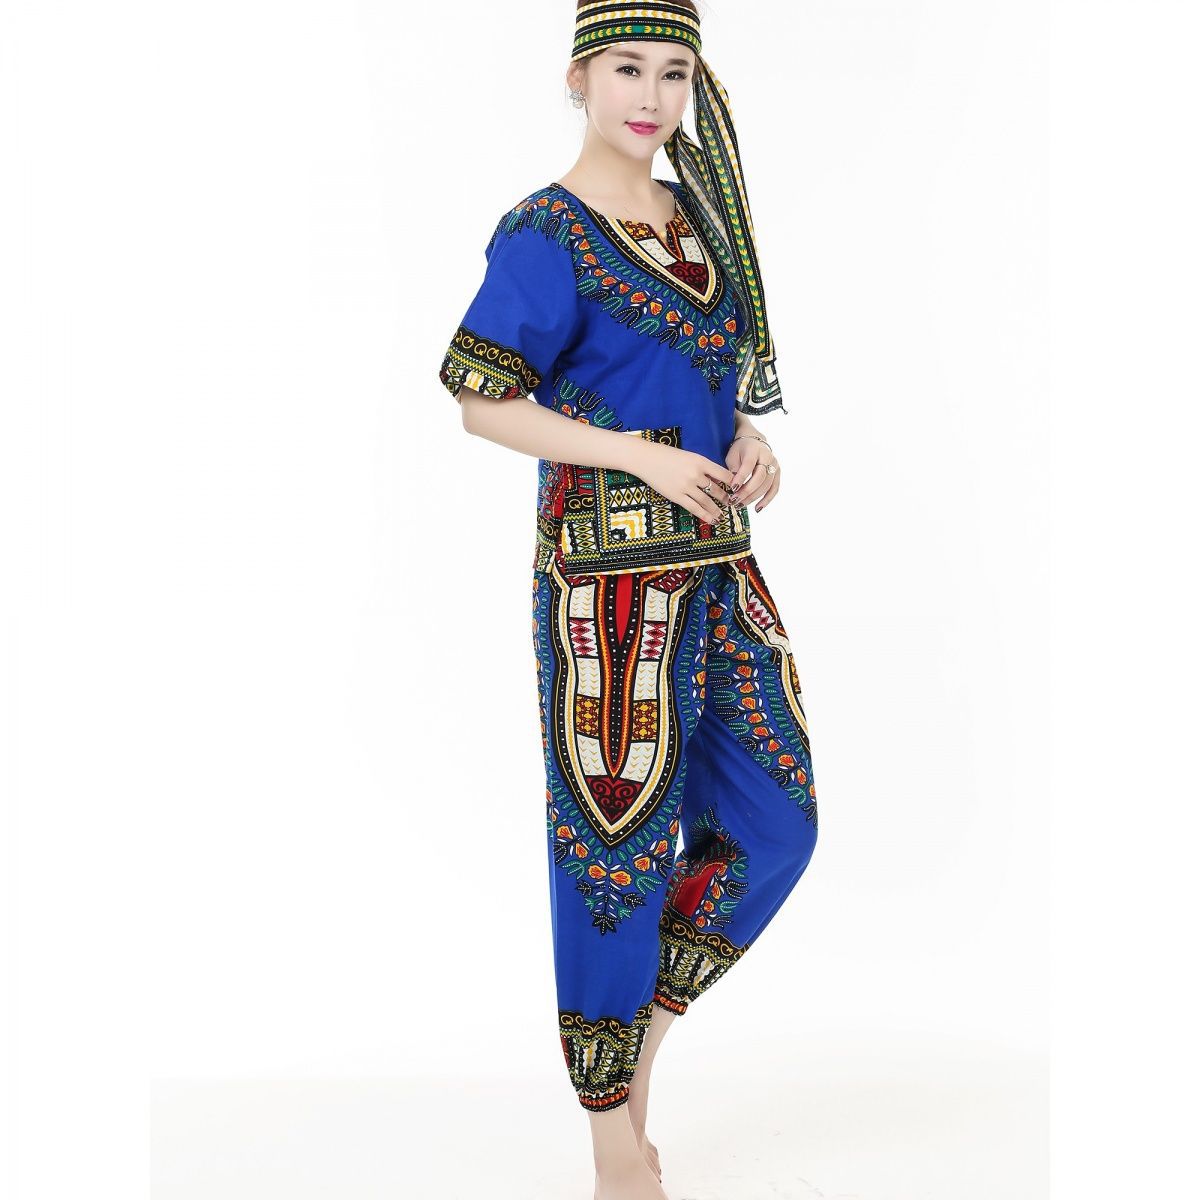 葫芦丝非洲鼓舞蹈演出服泰国东南亚风情印花表演服装民族风服饰